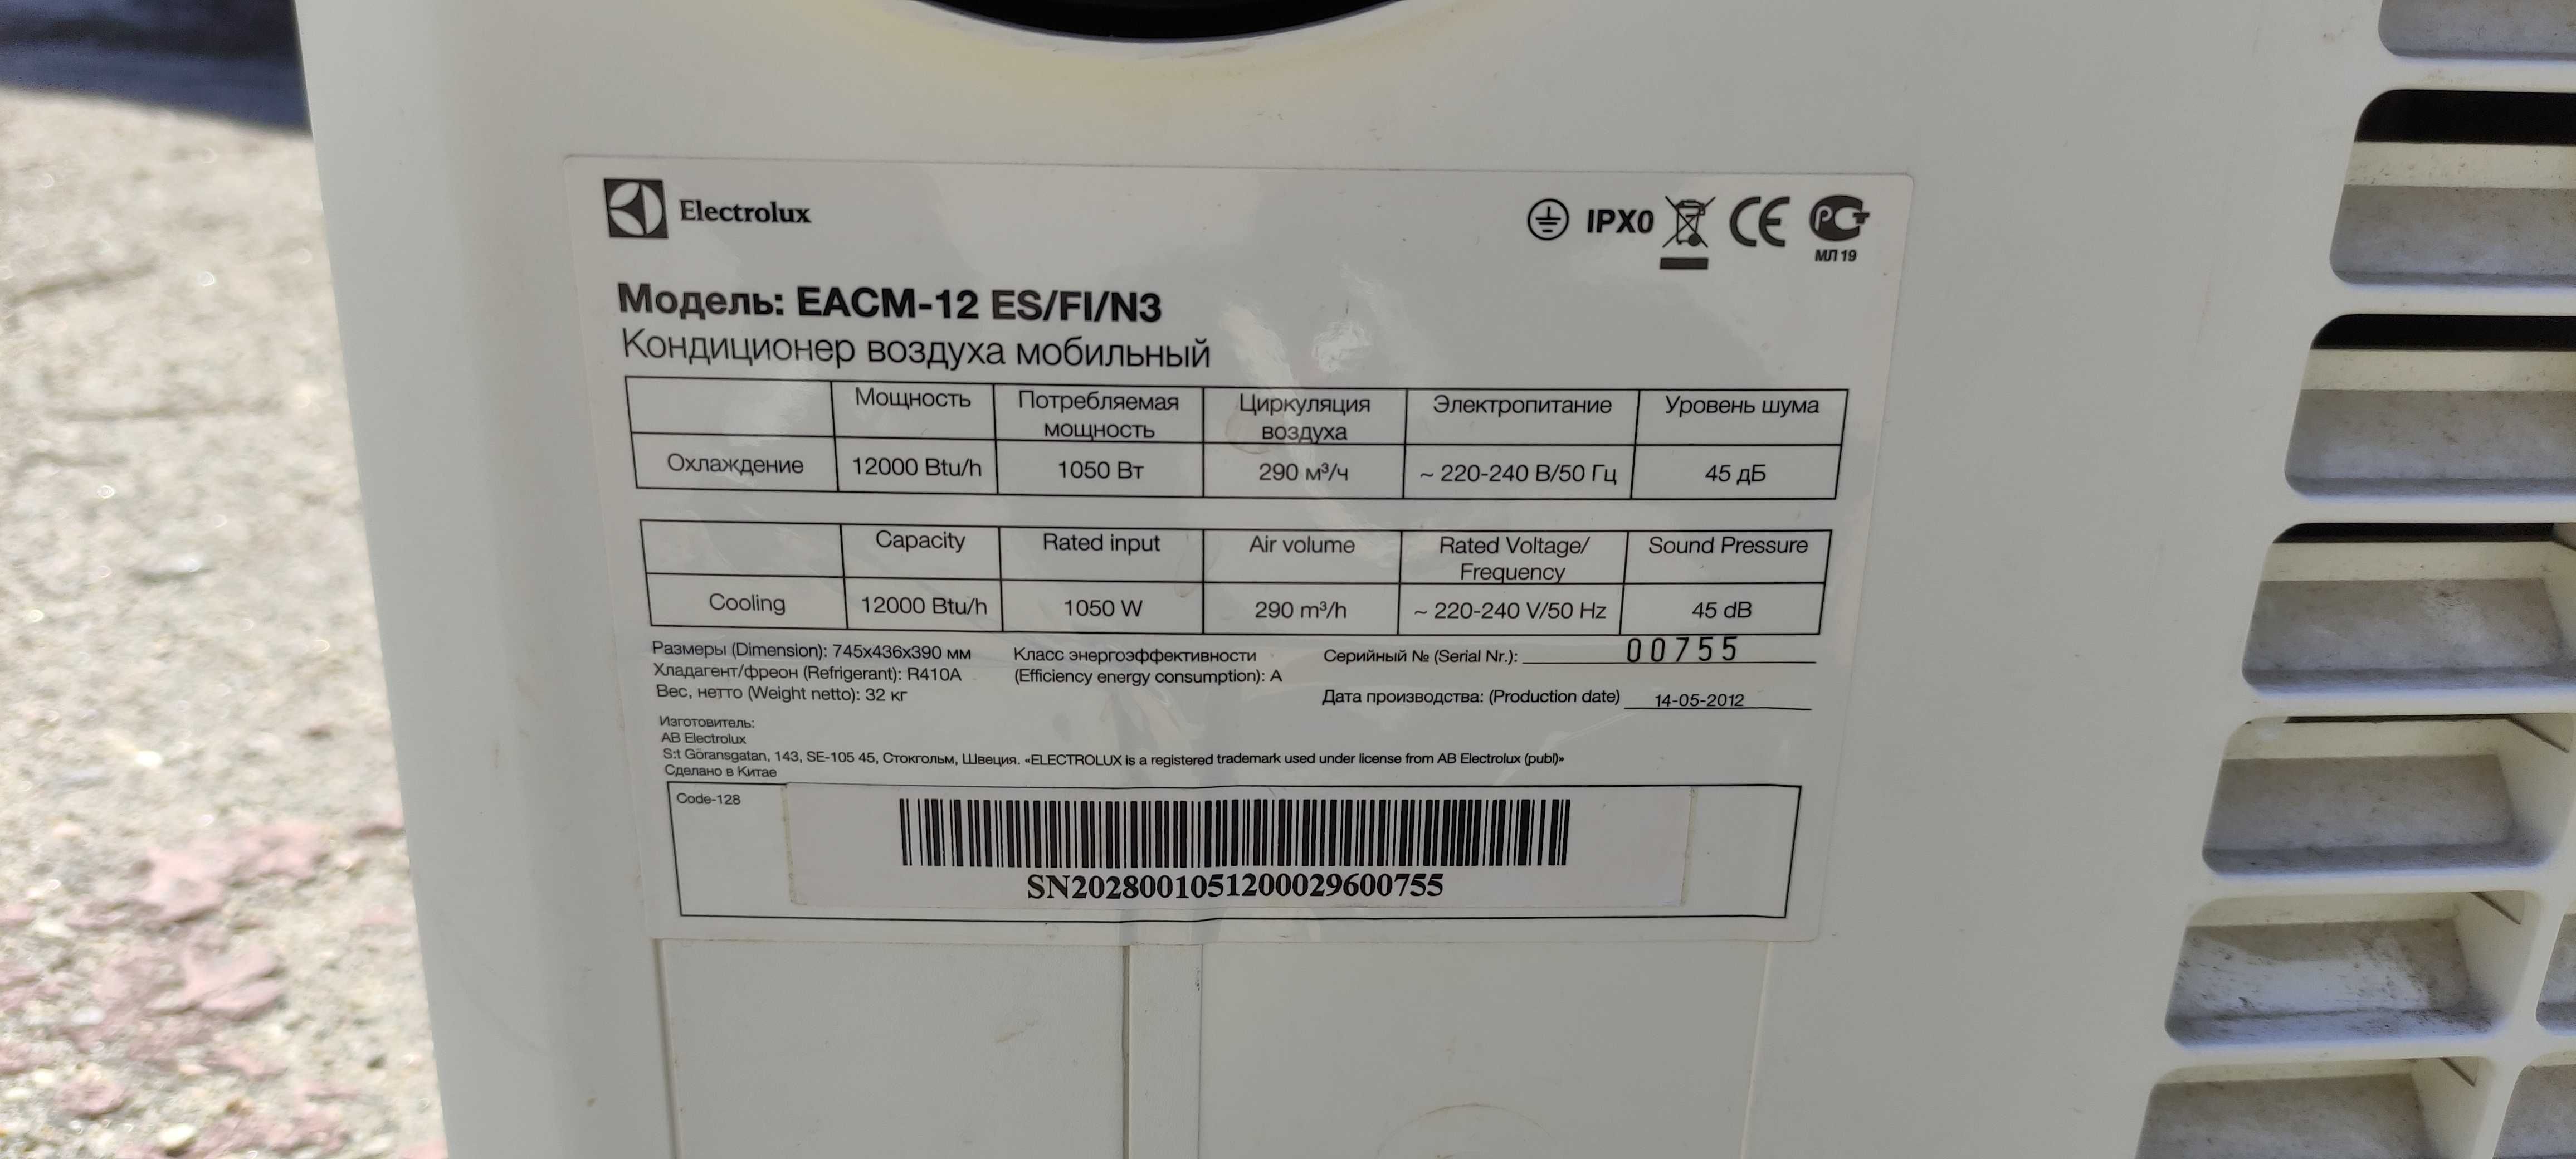 Мобильный кондиционер Electrolux EACM-12 ES/FI/N3